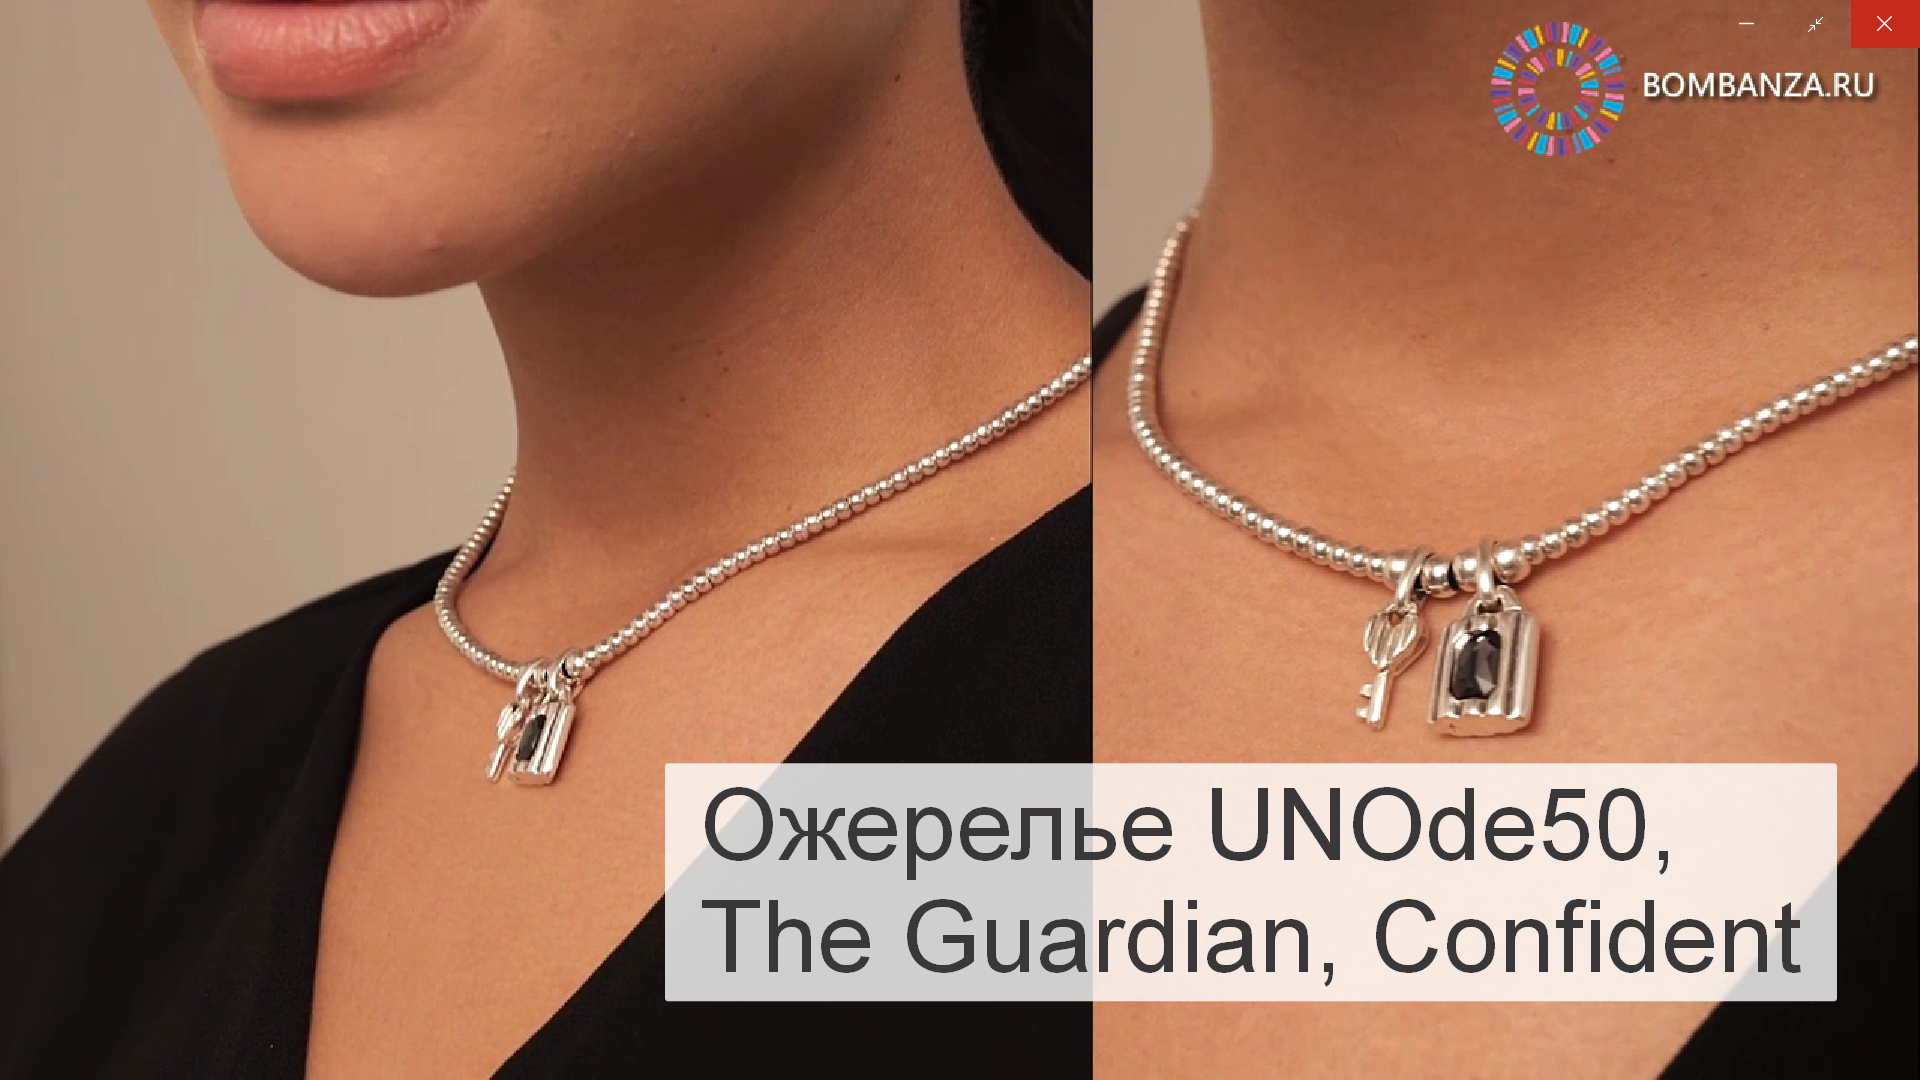 Ожерелье UNOde50, The Guardian с серебром, Confident, COL1800GRSMTL0U. Премиум бижутерия из Испании